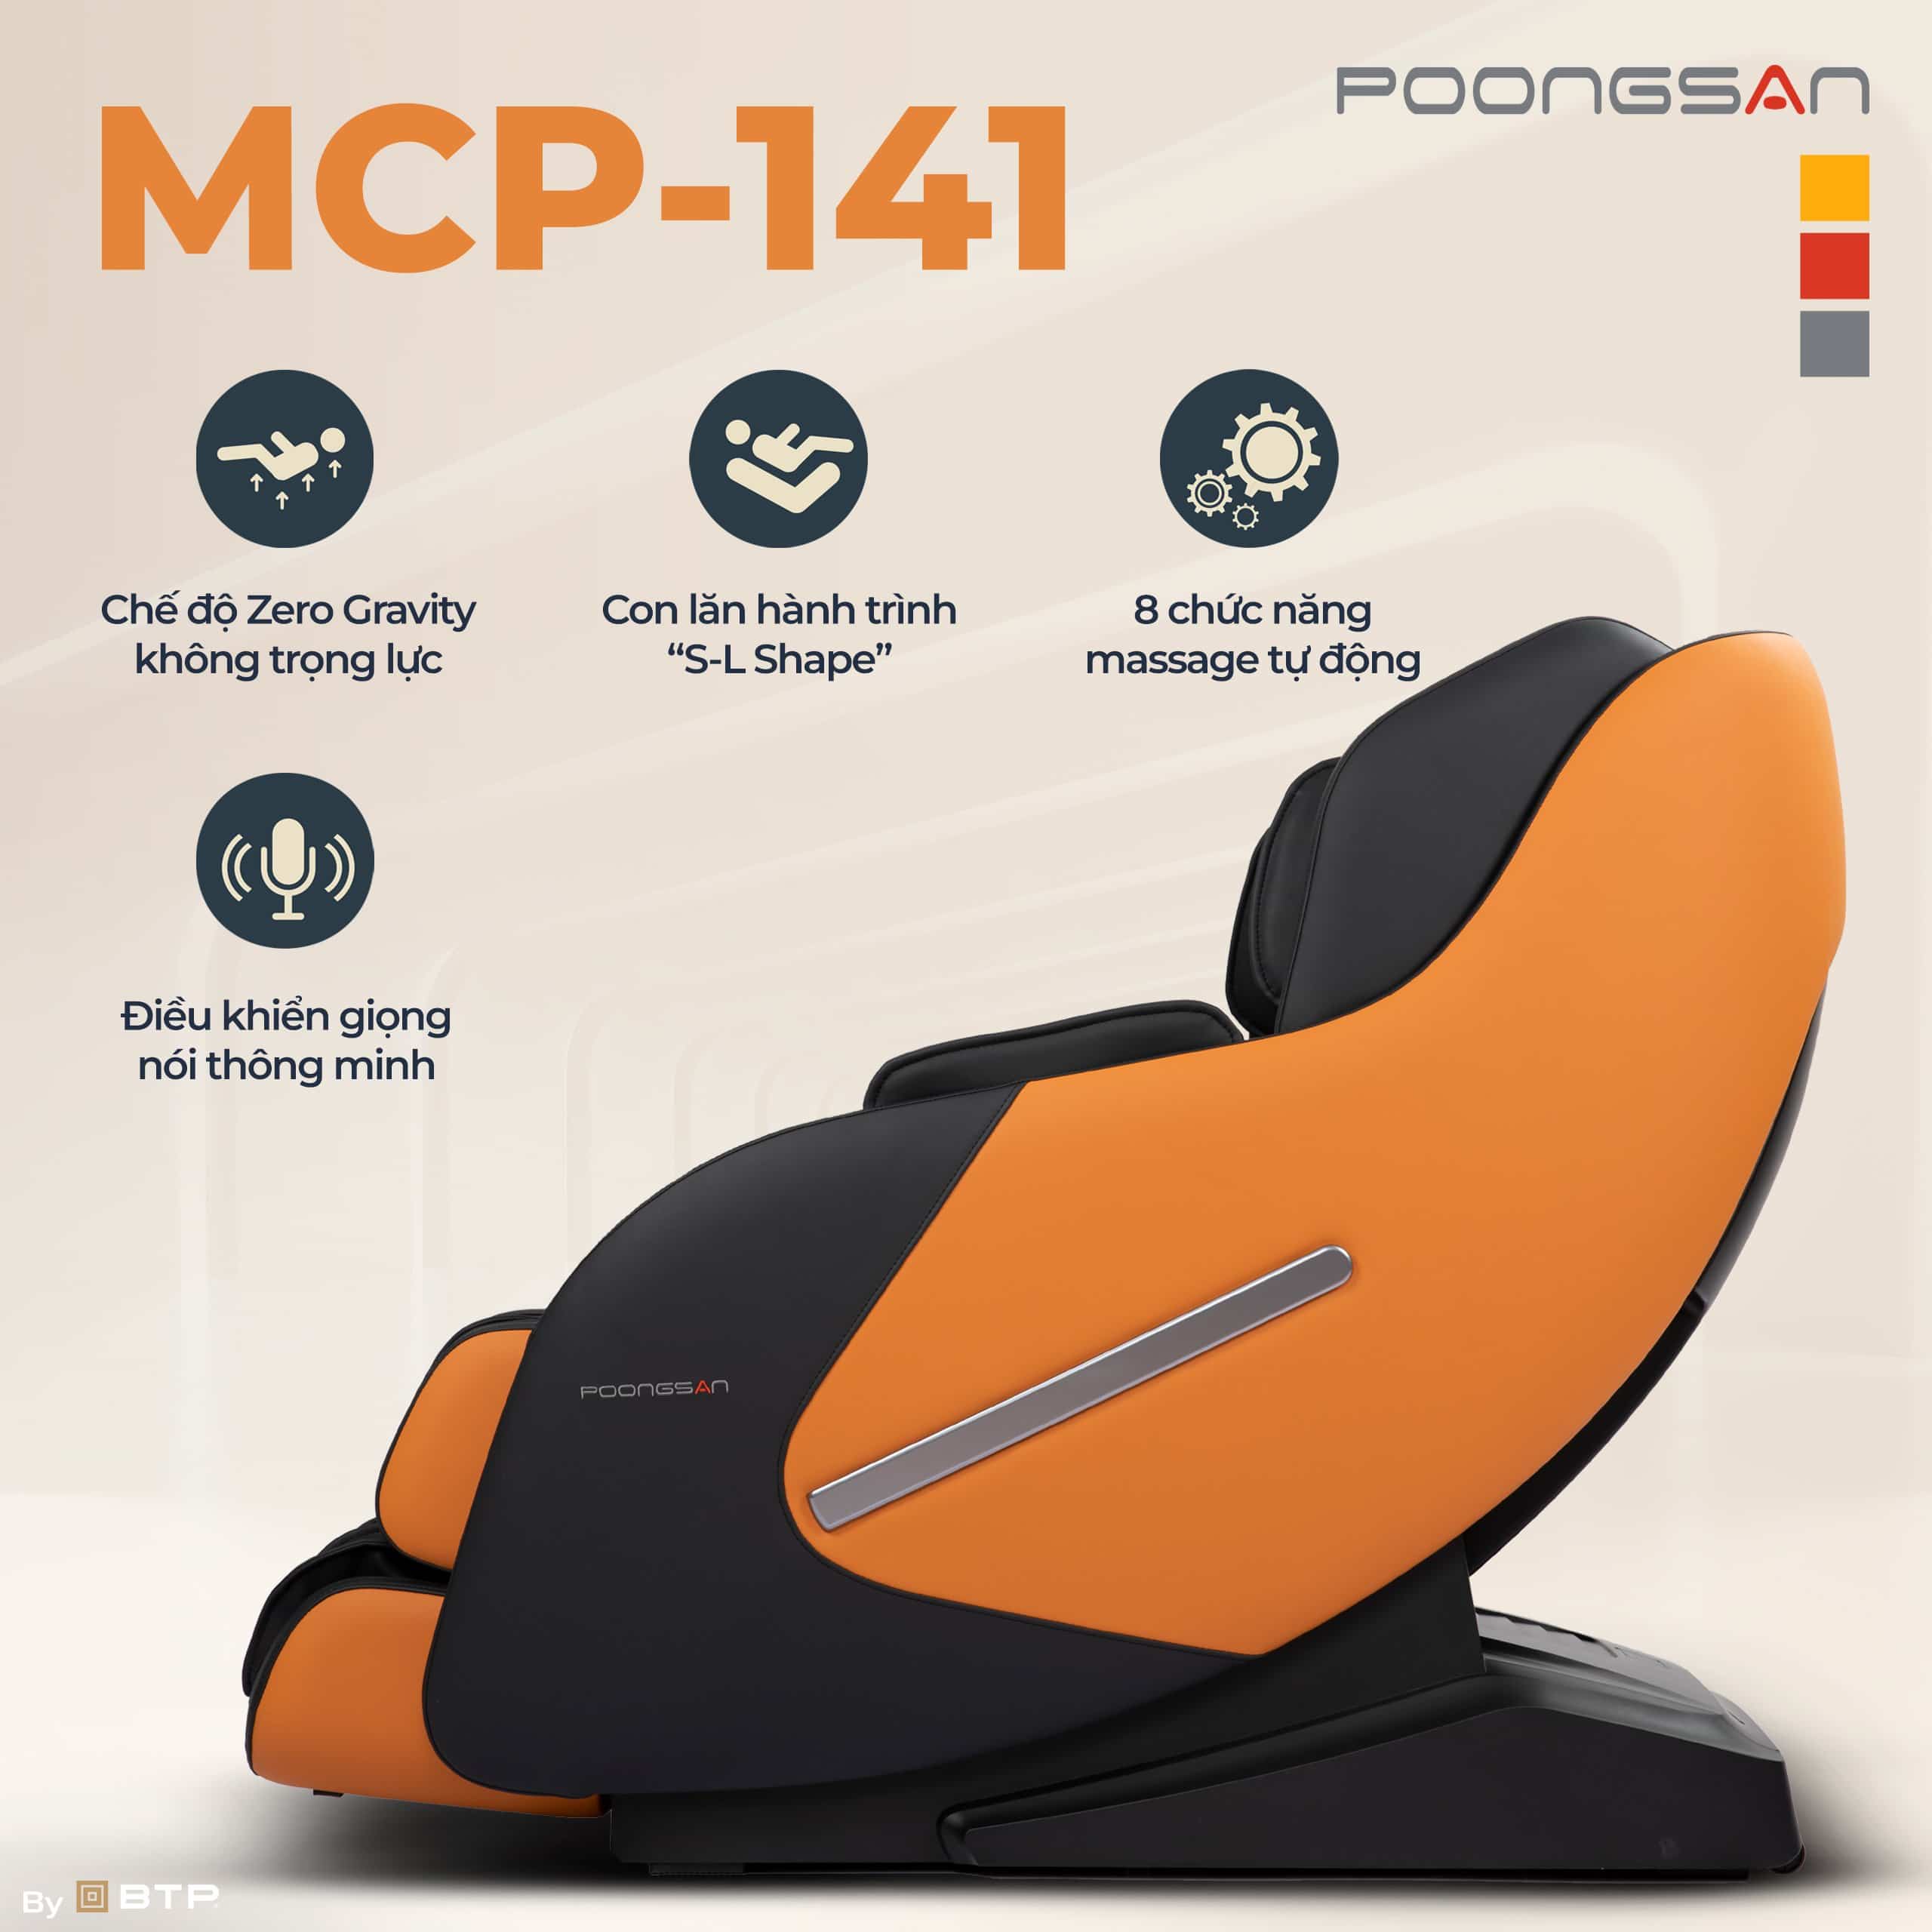 MCP-141 là mẫu sản phẩm ghế massage quốc dân cho nhu cầu chăm sóc sức khỏe gia đình